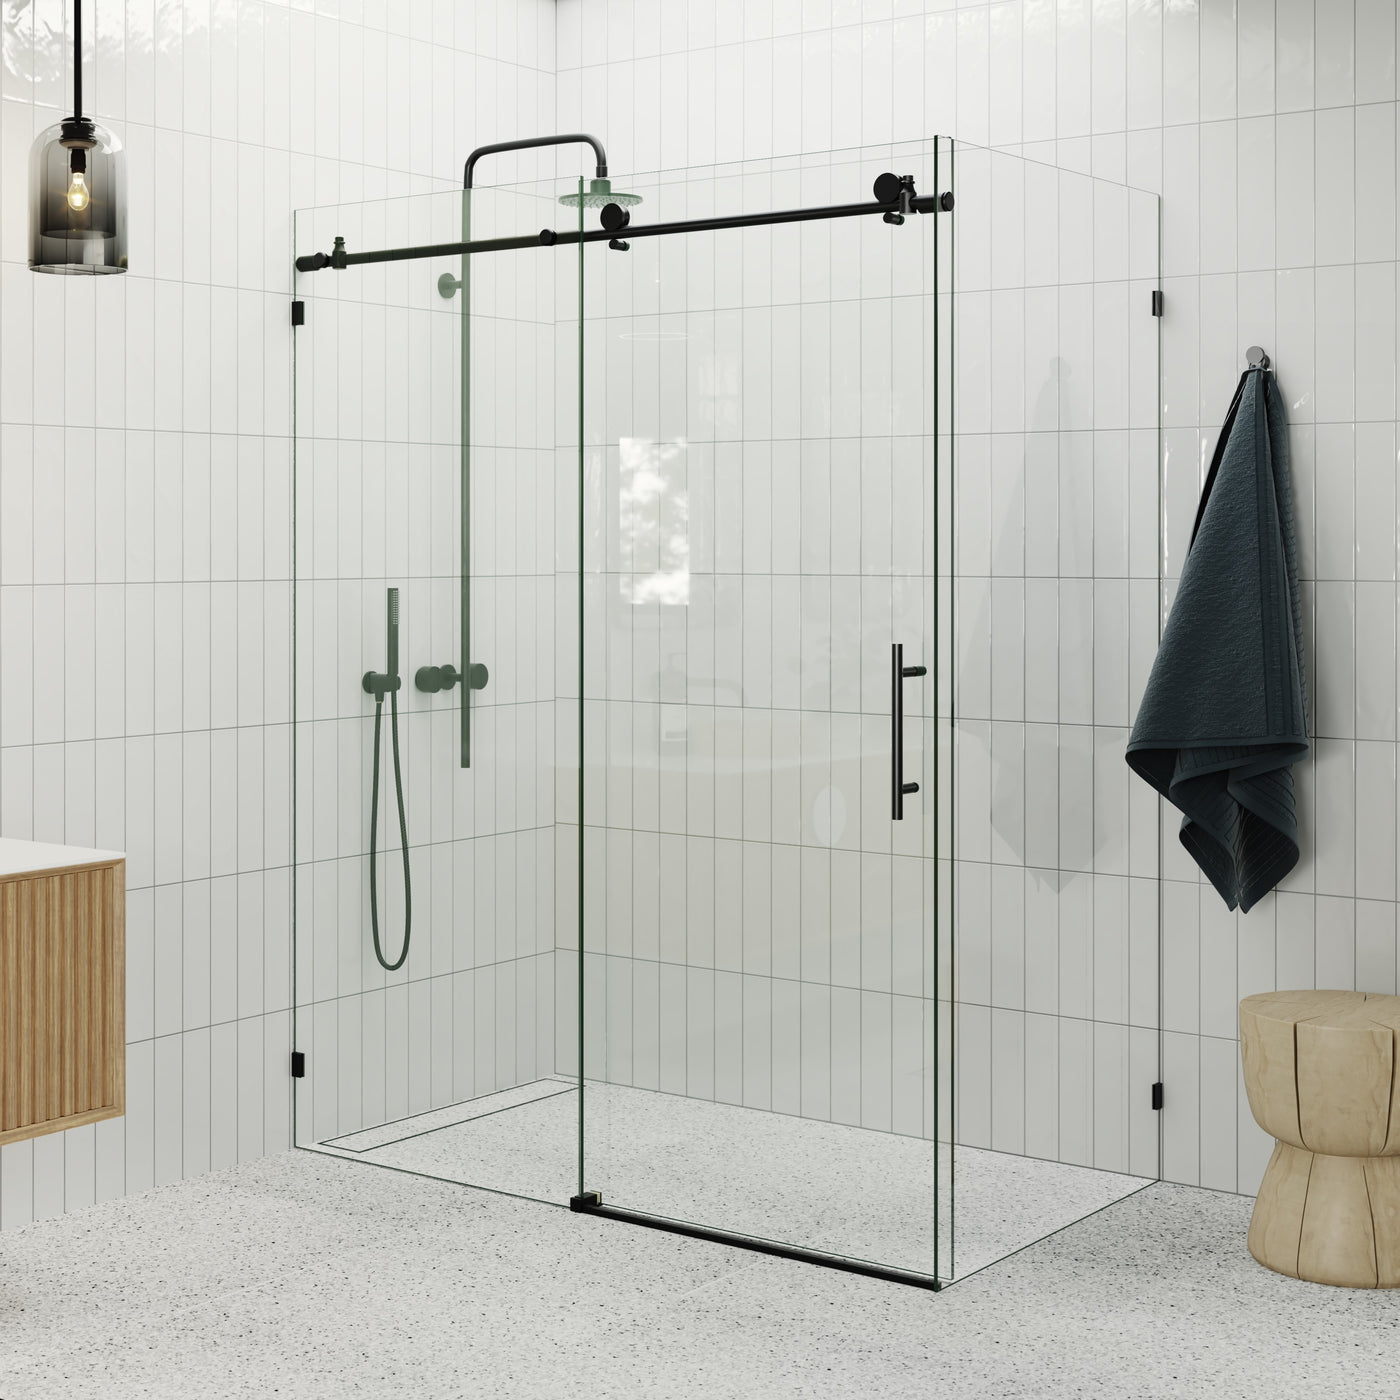 Sliding Shower Screen Enclosure - Matte Black